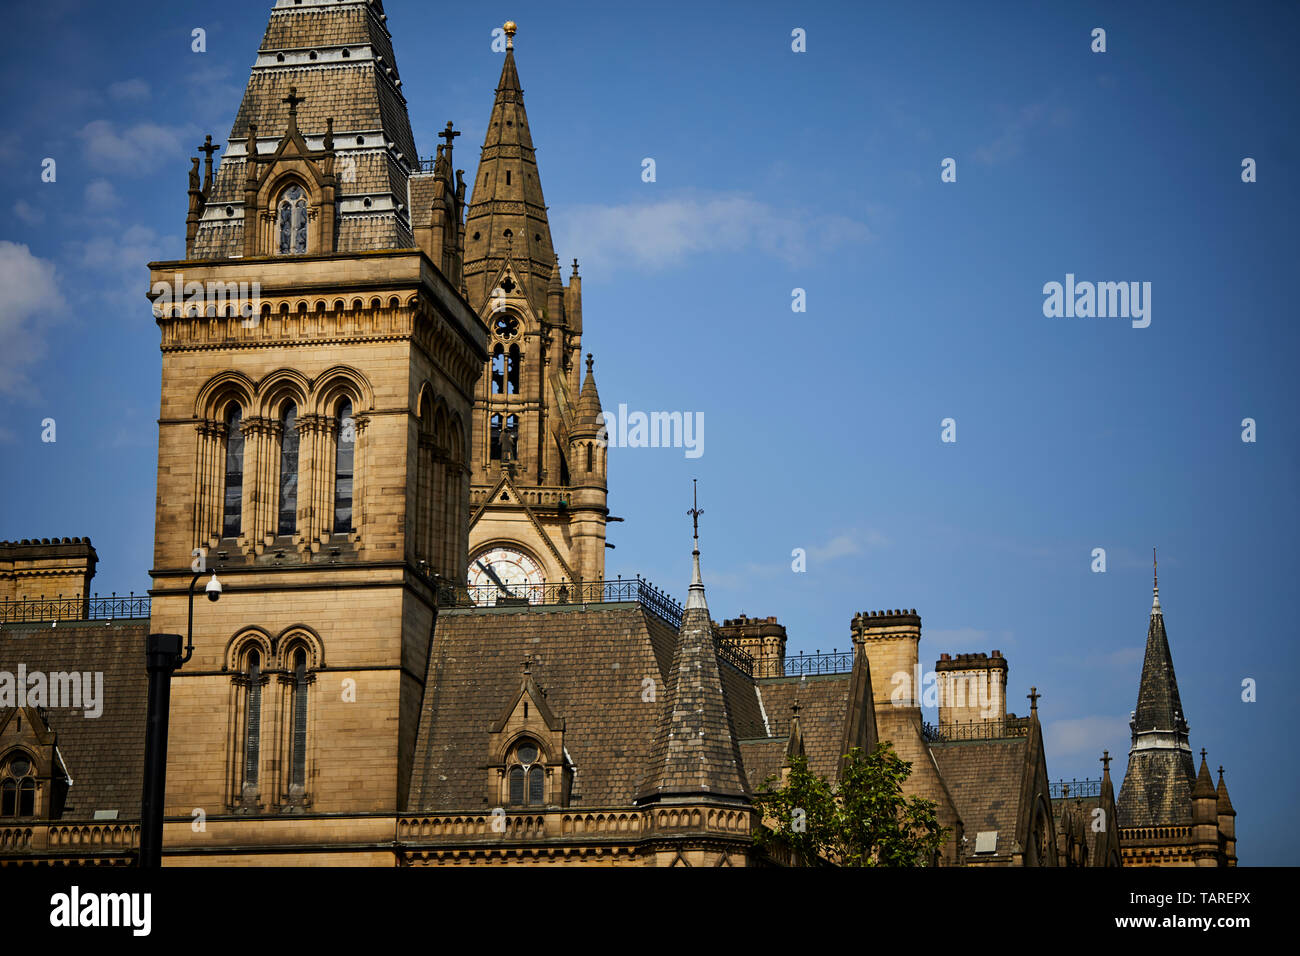 Manchester town hall dettaglio del tetto sul retro dell'edificio di riferimento Foto Stock